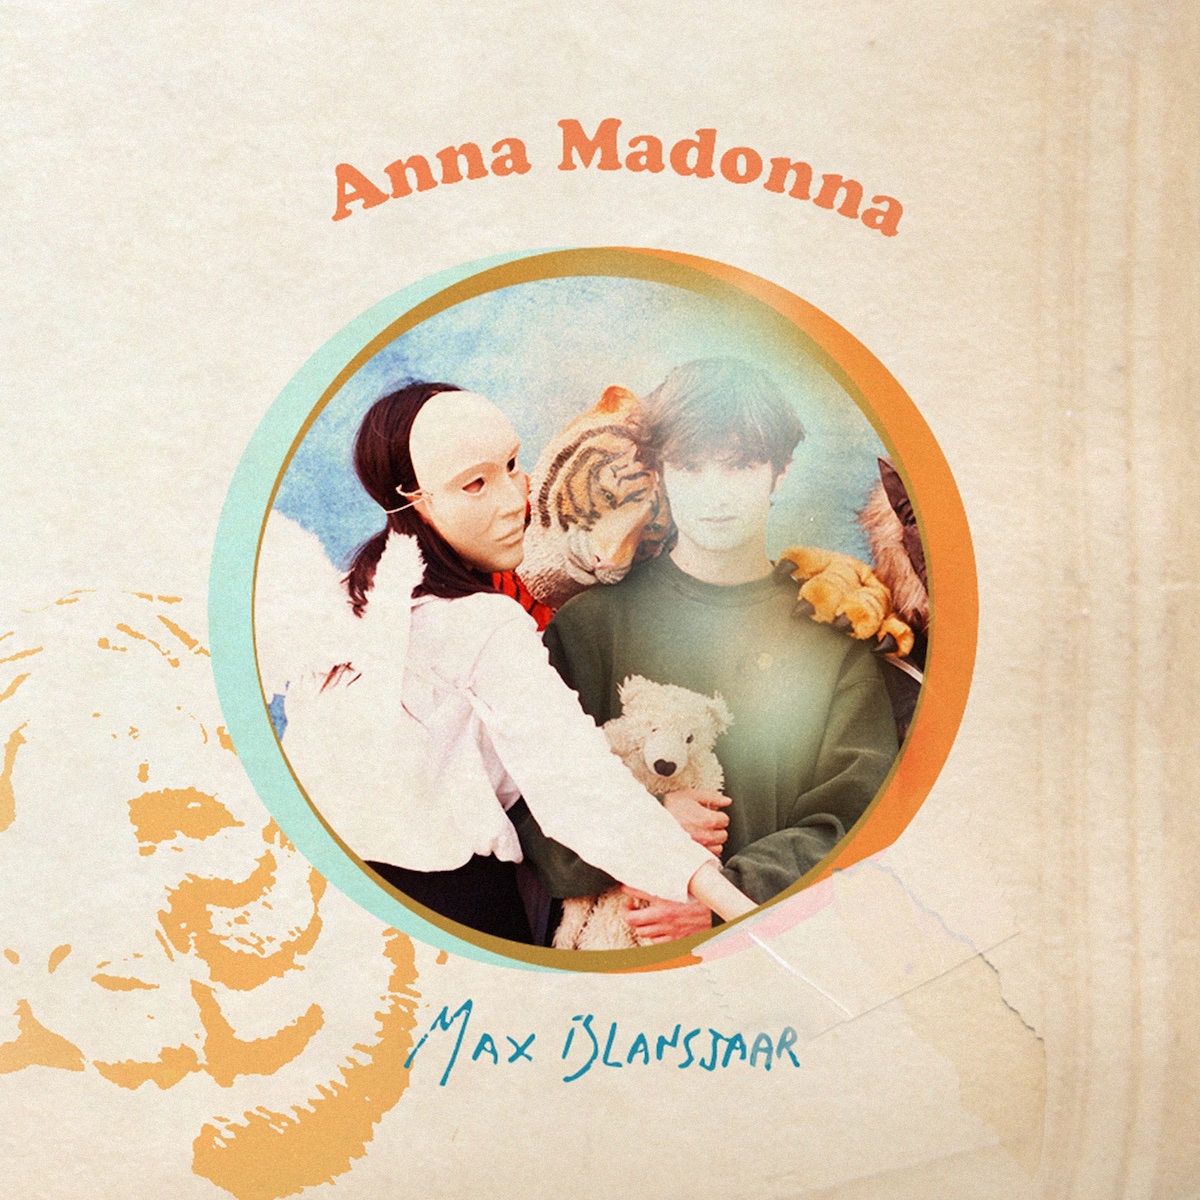 LISTEN: “Anna Madonna” by Max Blansjaar